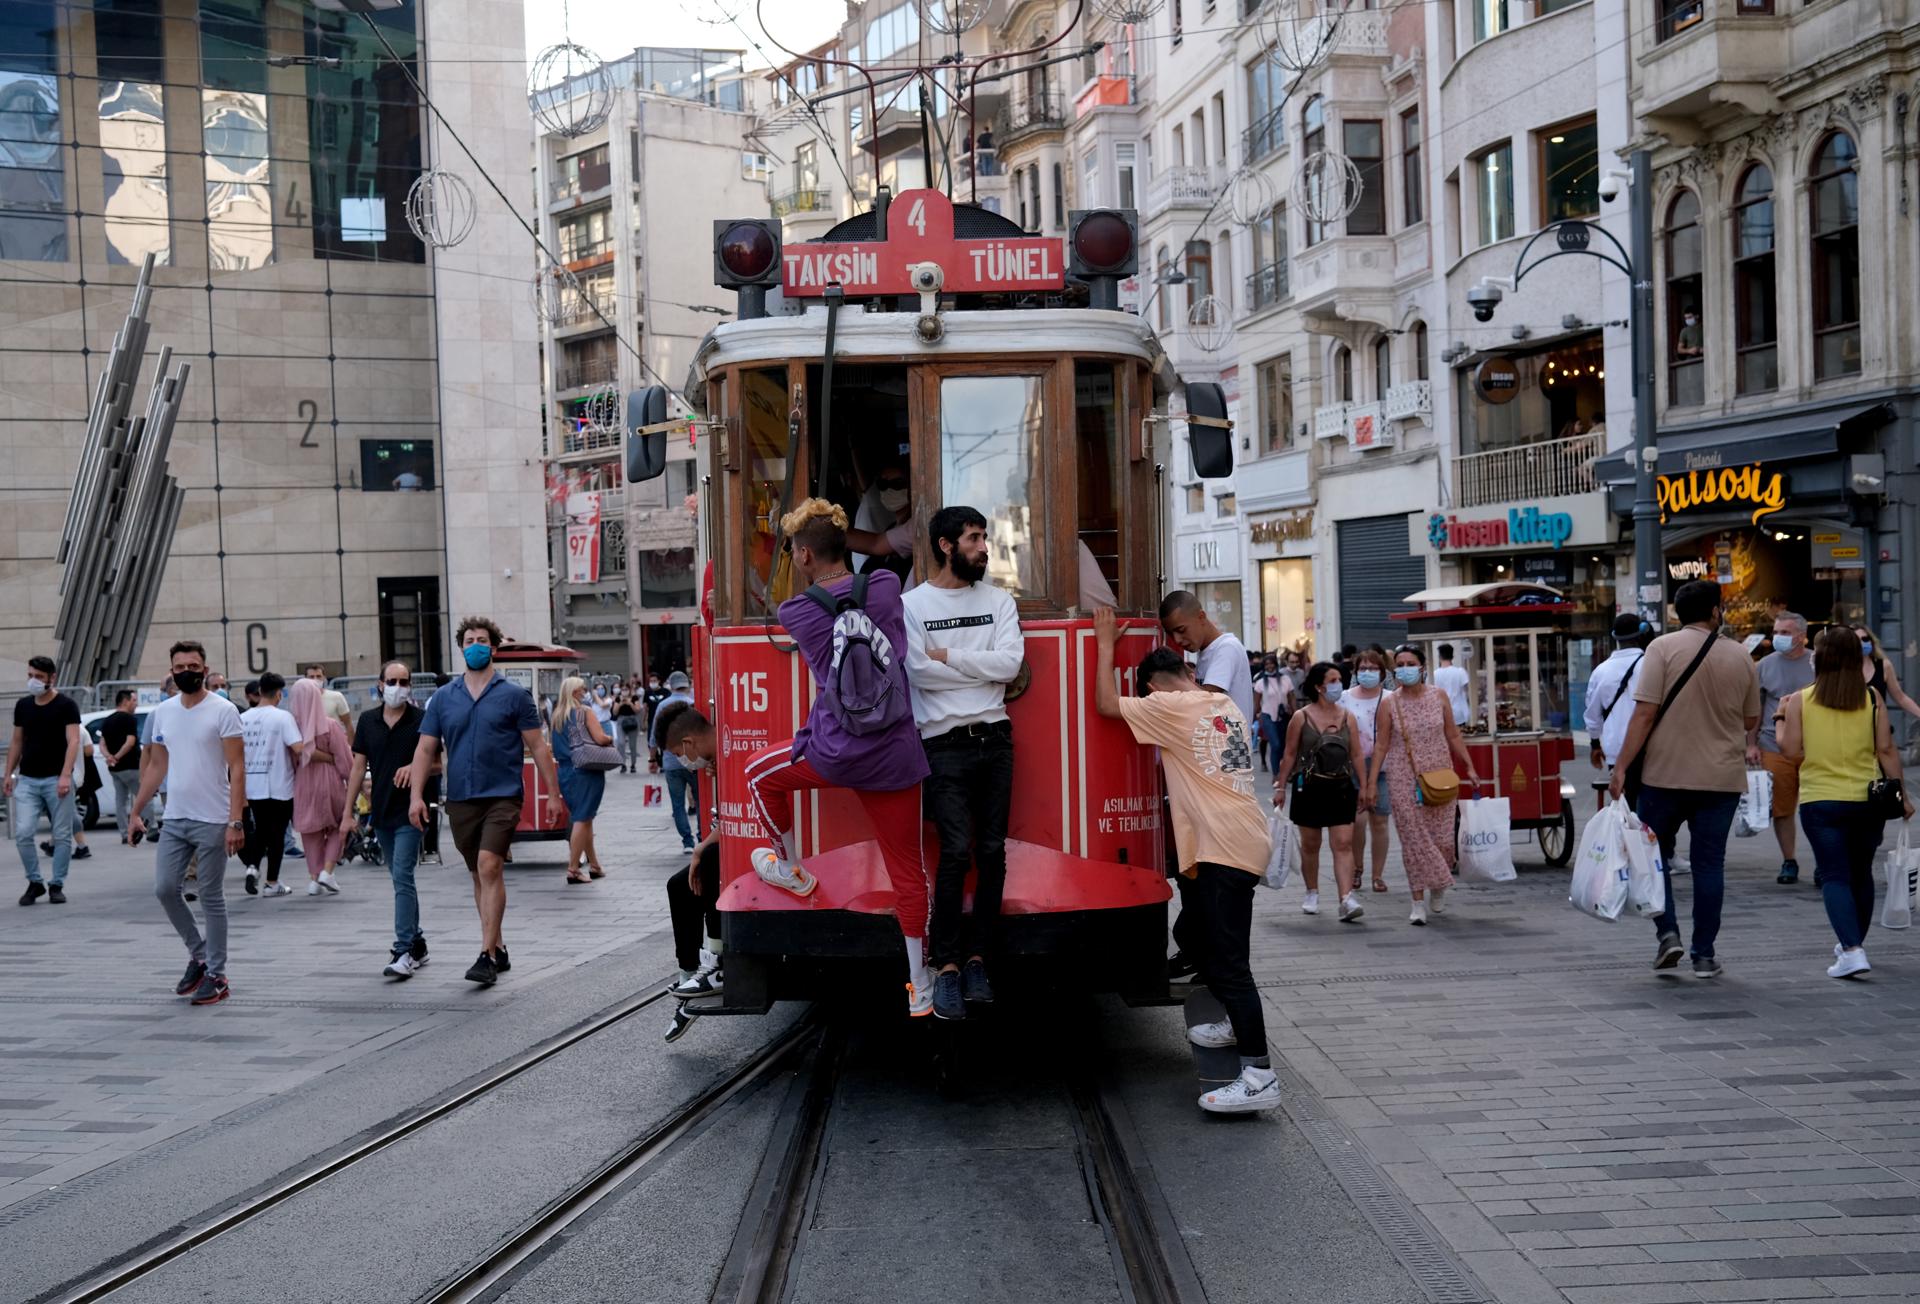 Personas caminan y viajan en tranvía en una calle de Estambul (Turquía). EFE/EPA/SEDAT SUNA/ARCHIVO